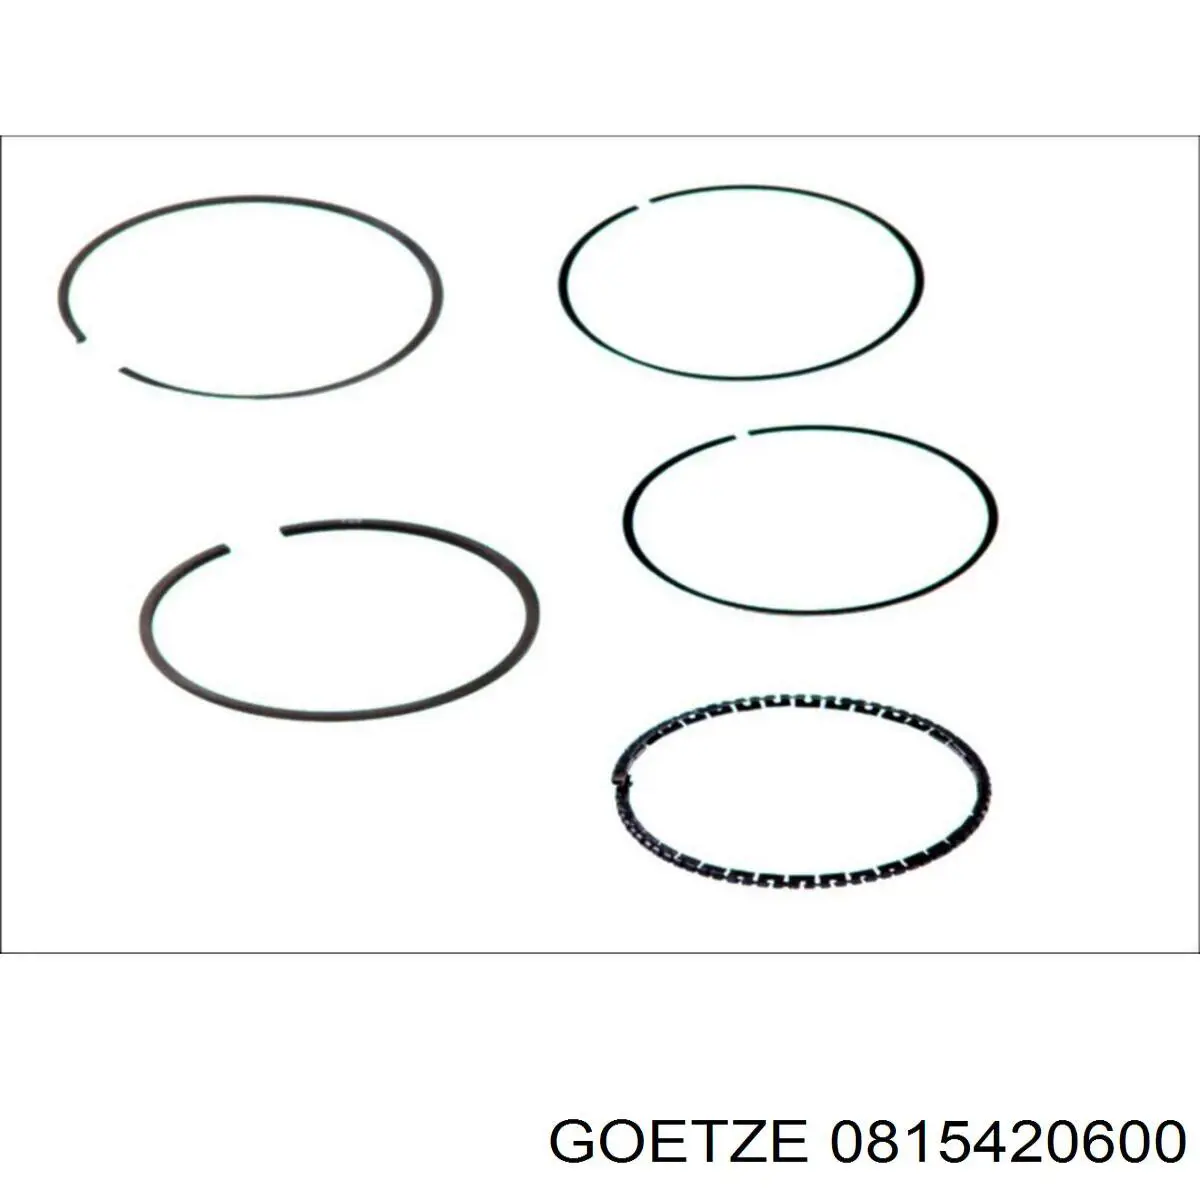 08-154206-00 Goetze кольца поршневые на 1 цилиндр, 2-й ремонт (+0,50)